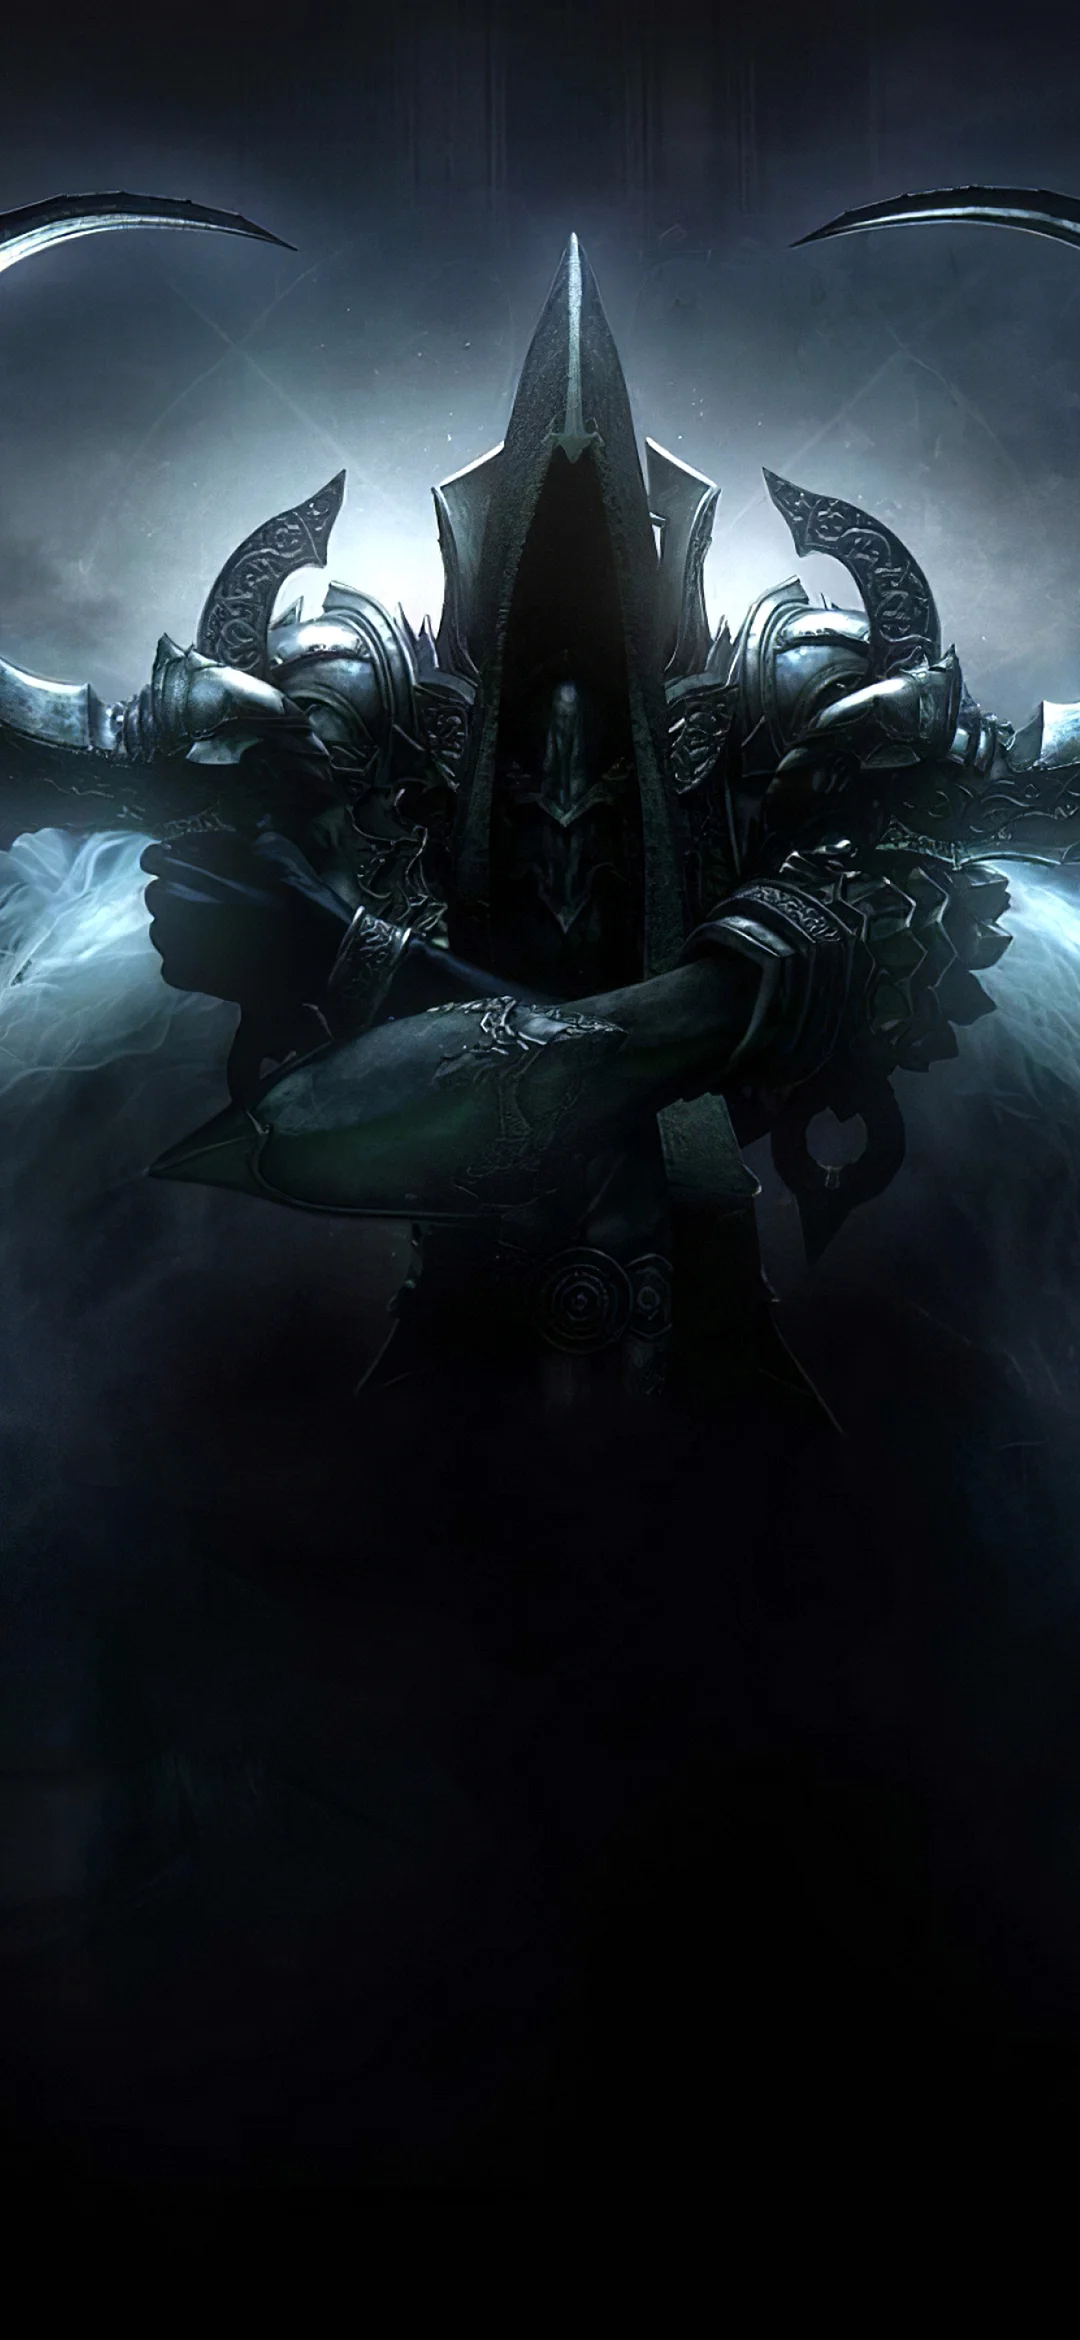 Diablo 3 Reaper Of Souls Wallpaper for iPhone 12 mini